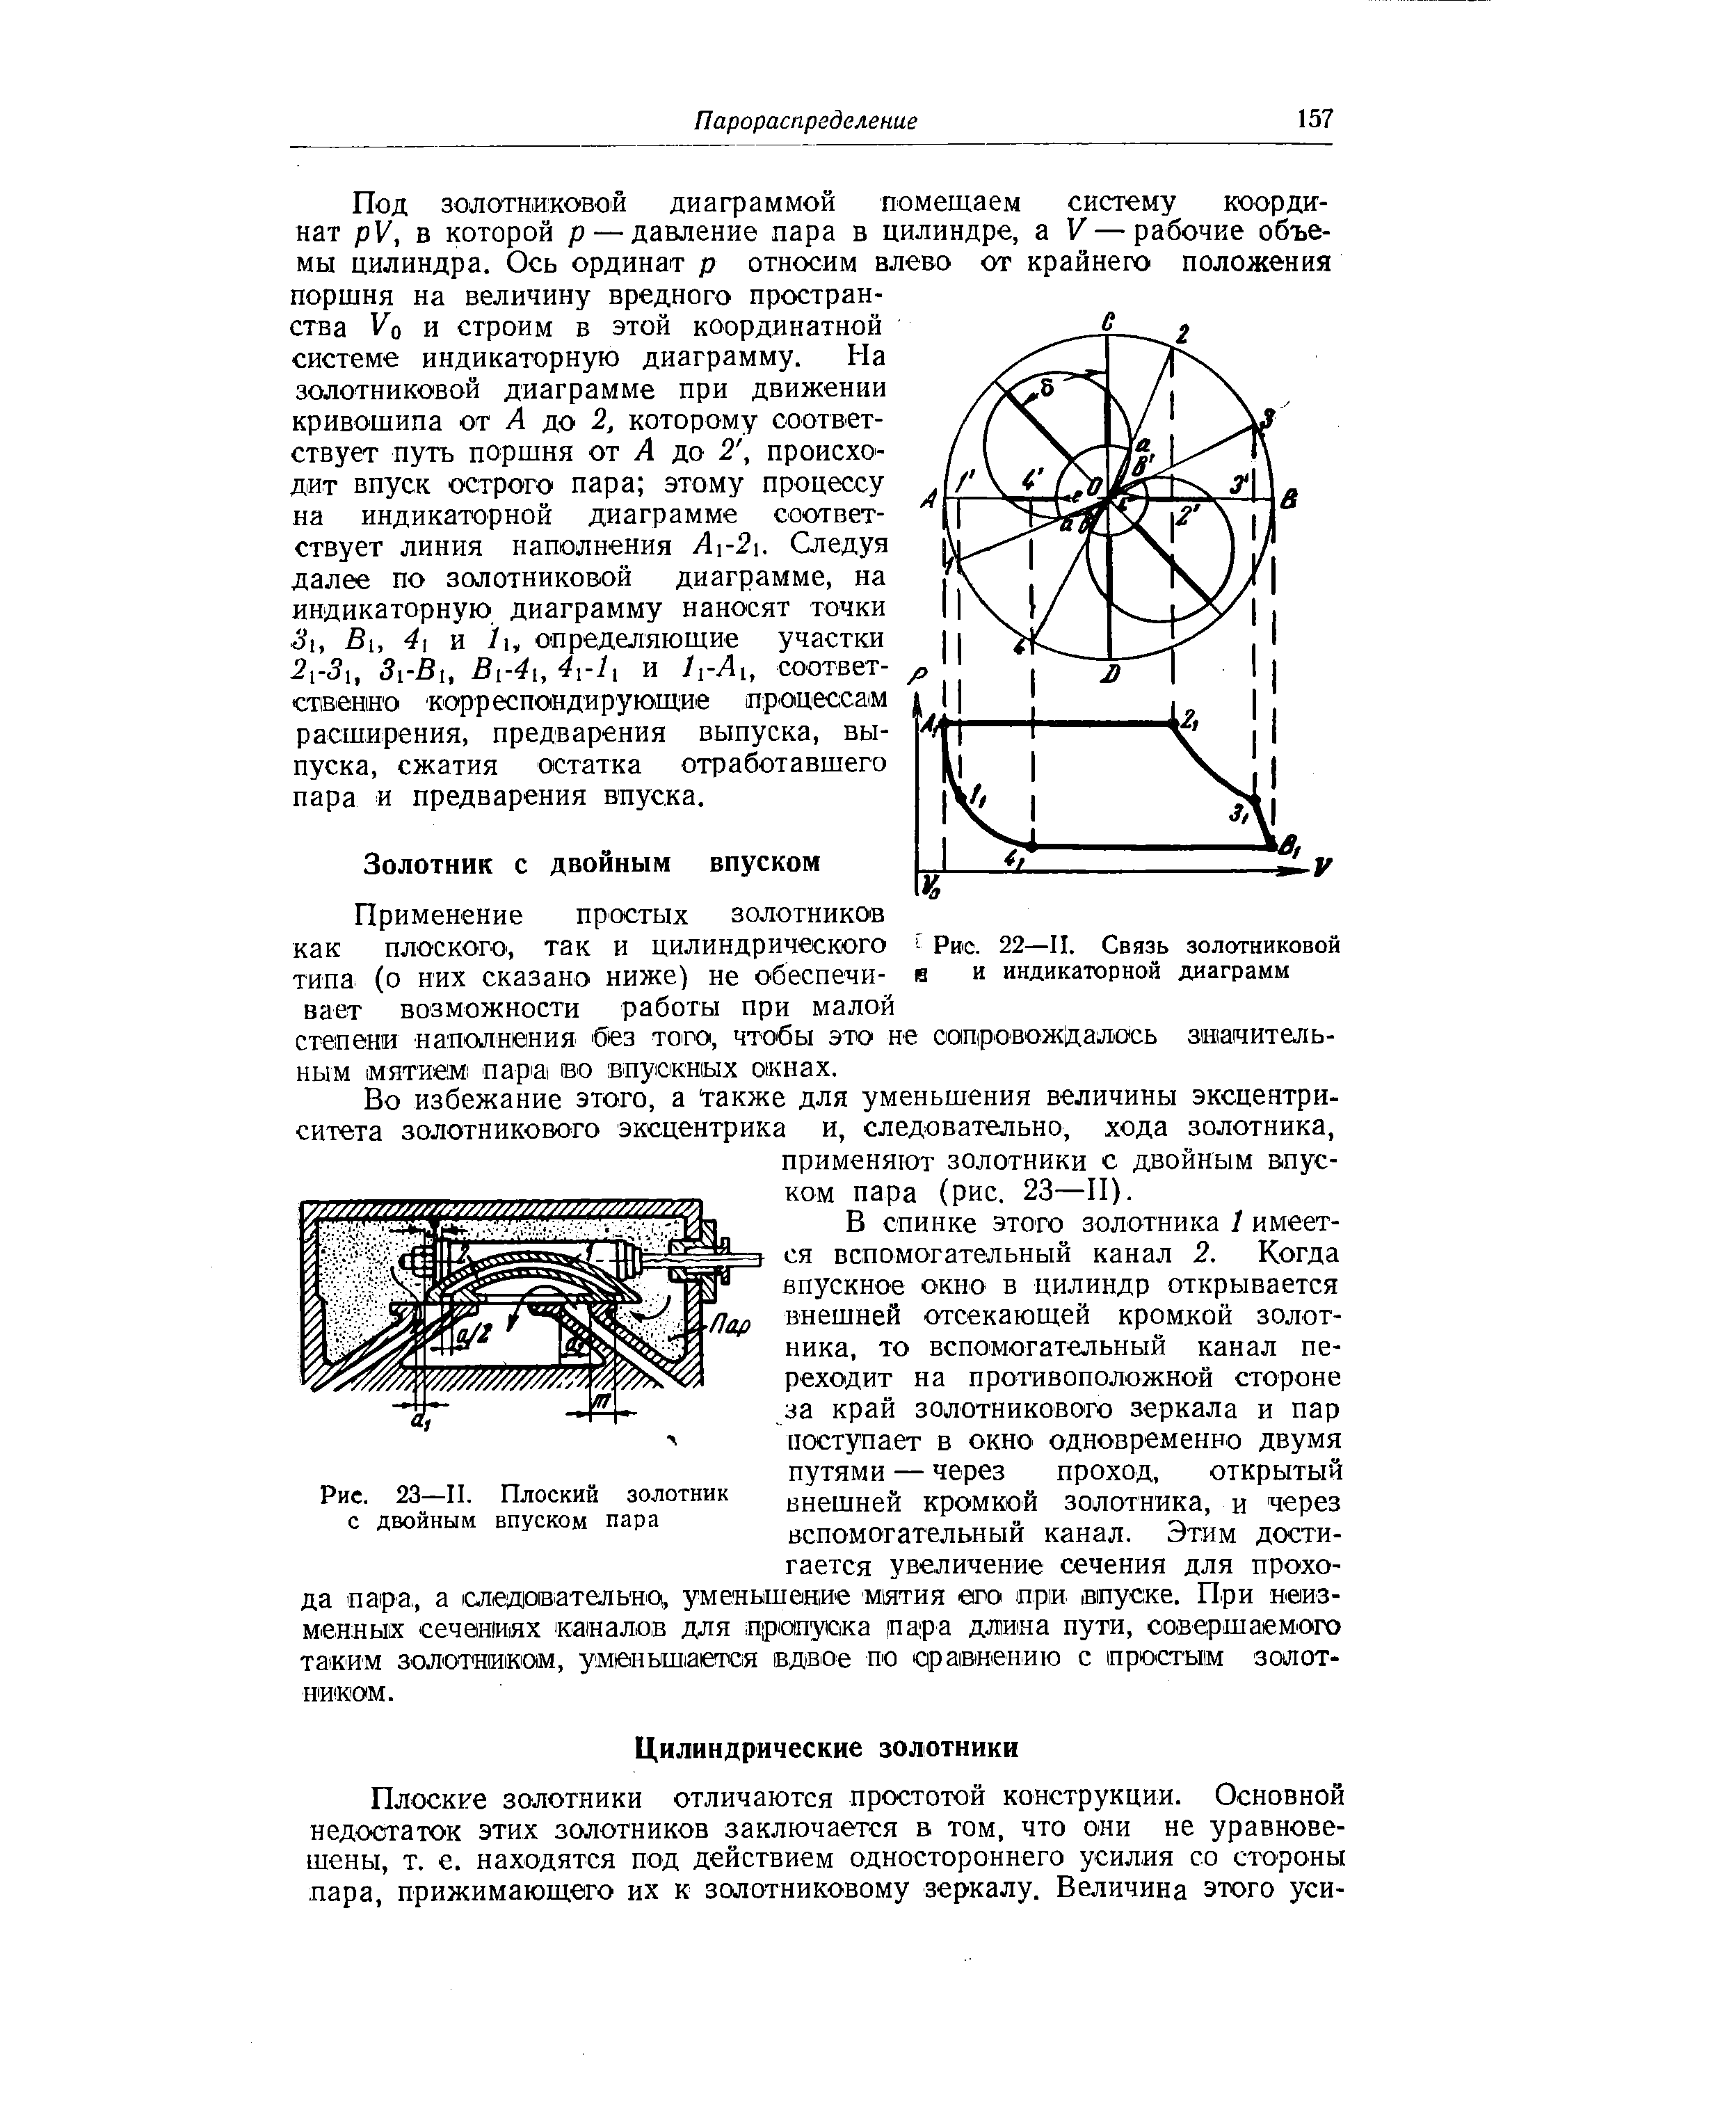 Рис. 22—II. Связь золотниковой 1 и индикаторной диаграмм
